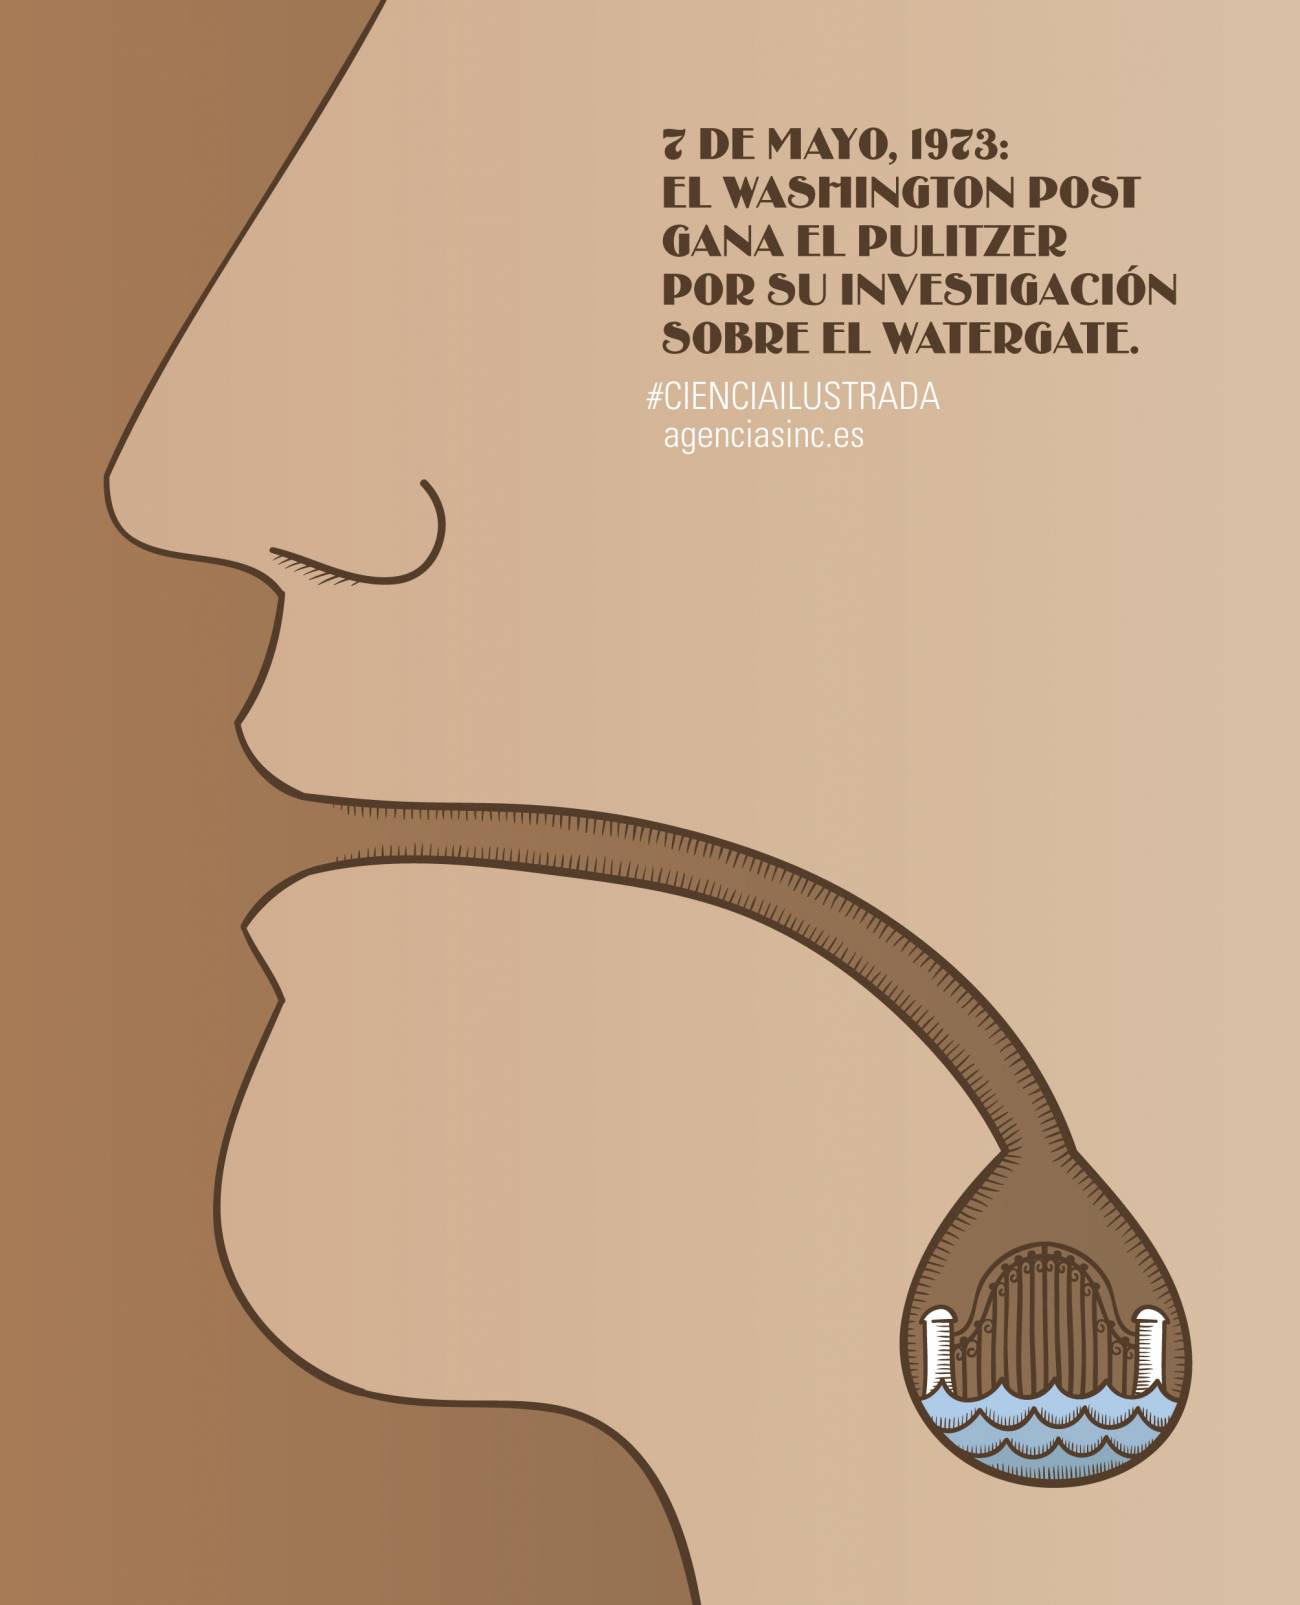 El 7 de mayo de 1973 el periódico The Washington Post ganaba el premio Pulitzer por su investigación en el caso Watergate